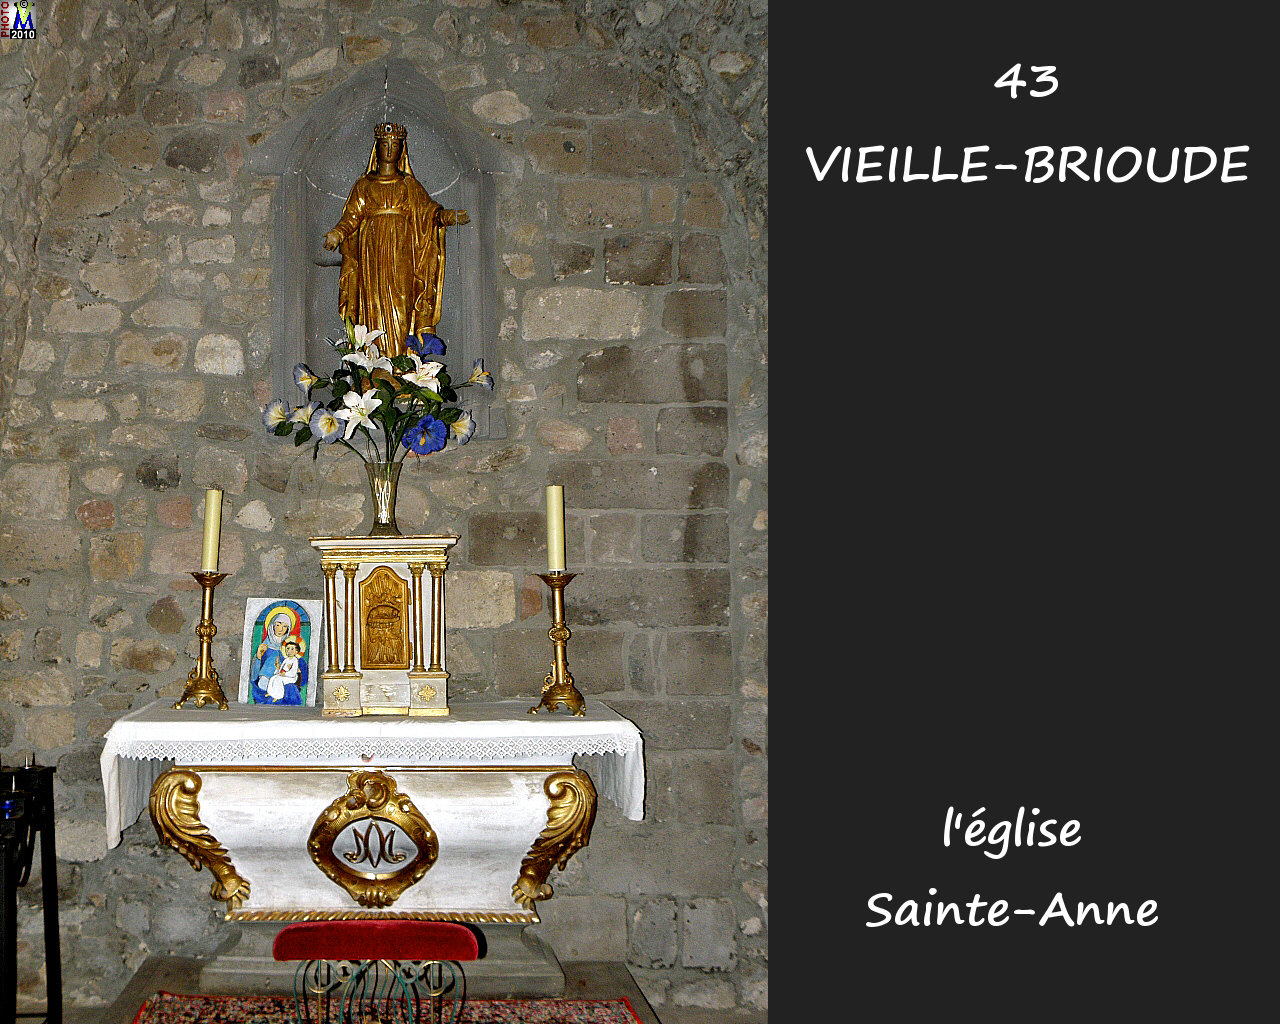 43VIEILLE-BRIOUDE_eglise_210.jpg